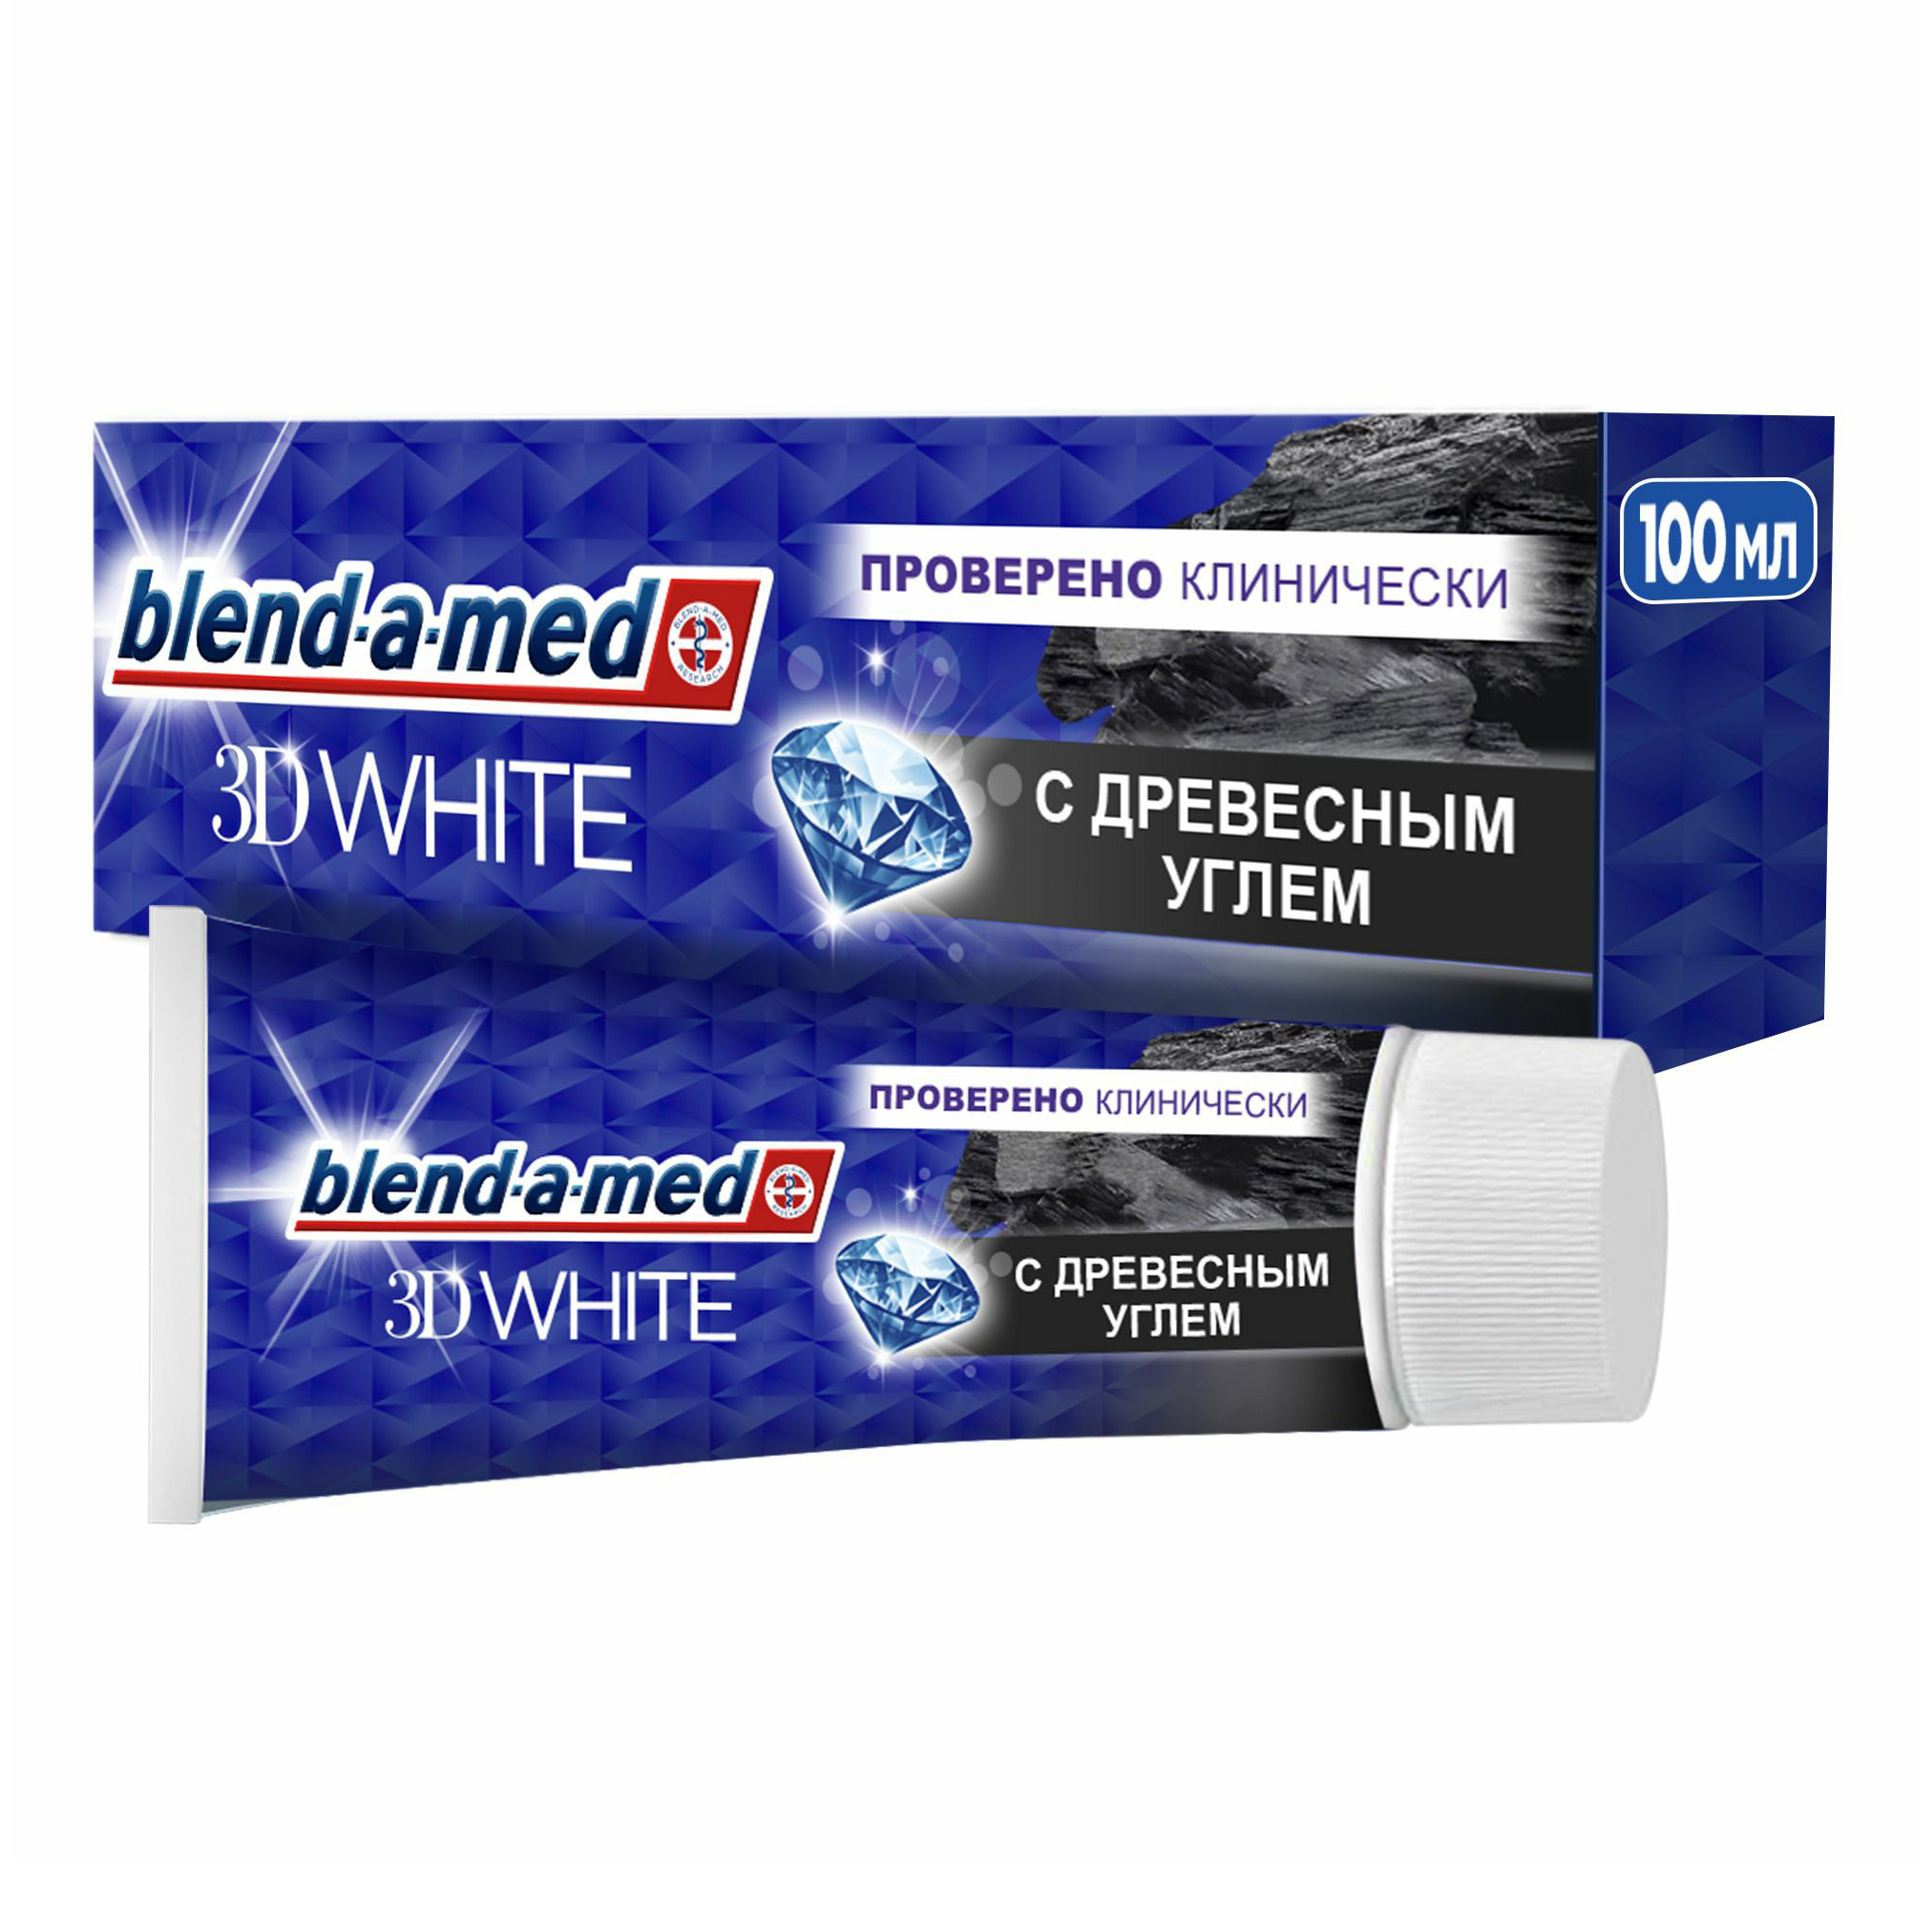 Зубная паста Blend-a-med 3D White Древесный уголь для безопасного отбеливания, 100 мл